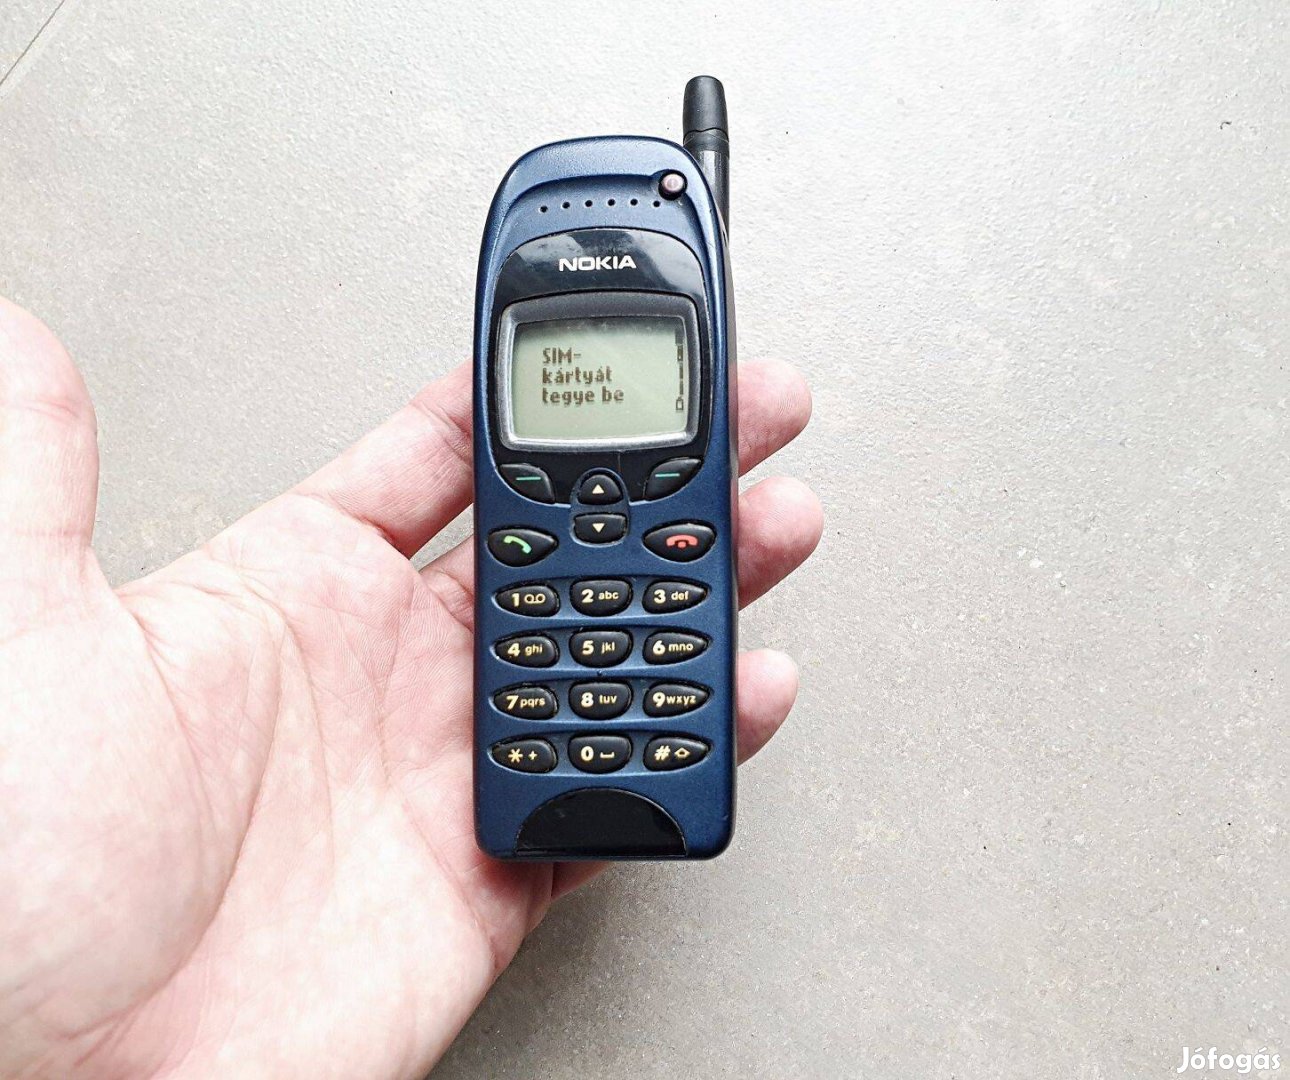 Nokia 6150 magyar, független telefon, kék színben